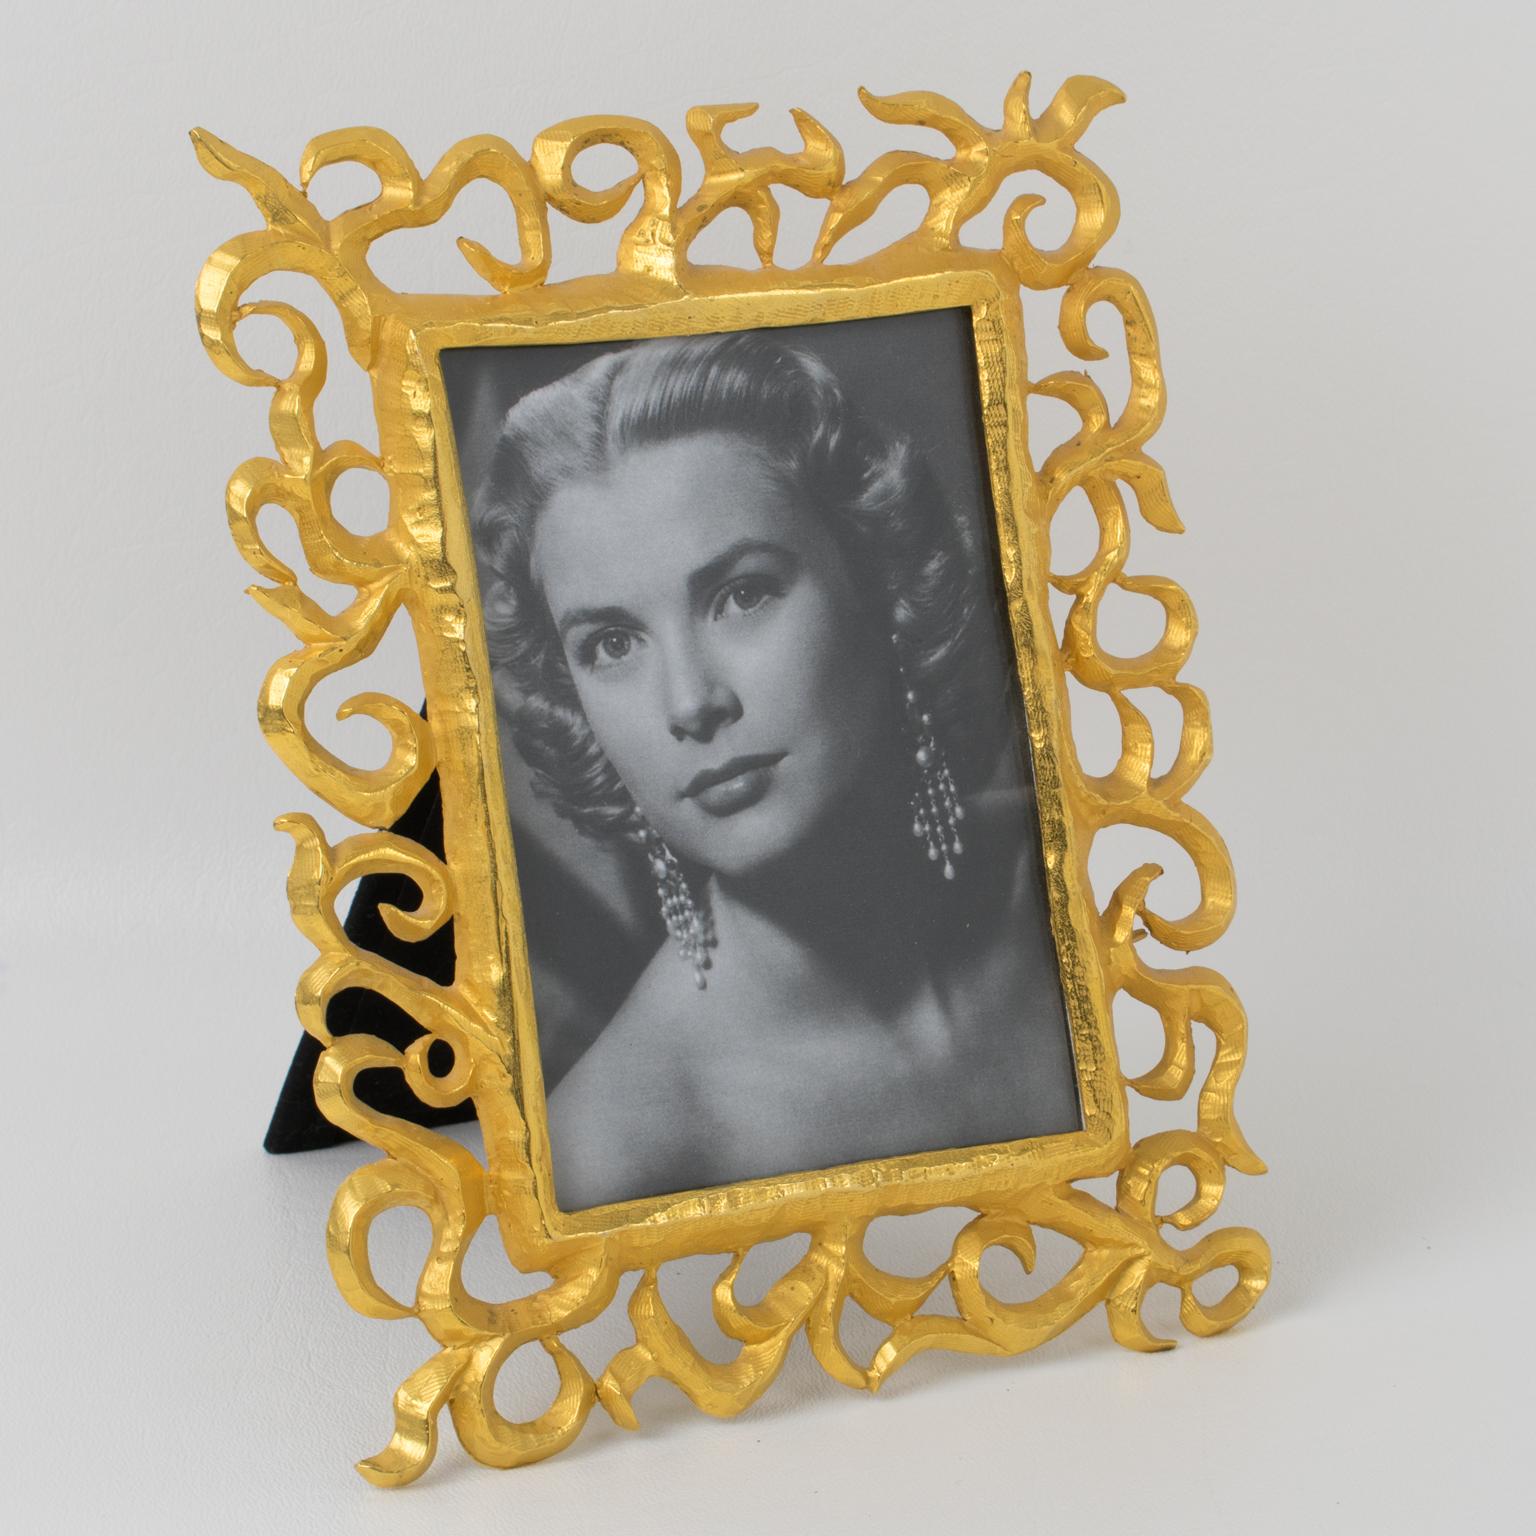 Dieser exquisite Fotorahmen aus vergoldetem Metall des französischen Designers Edouard Rambaud ist das perfekte Accessoire, um Ihre wertvollen Erinnerungen zu präsentieren. Dieser elegante, in den 1990er Jahren gefertigte Rahmen besteht aus